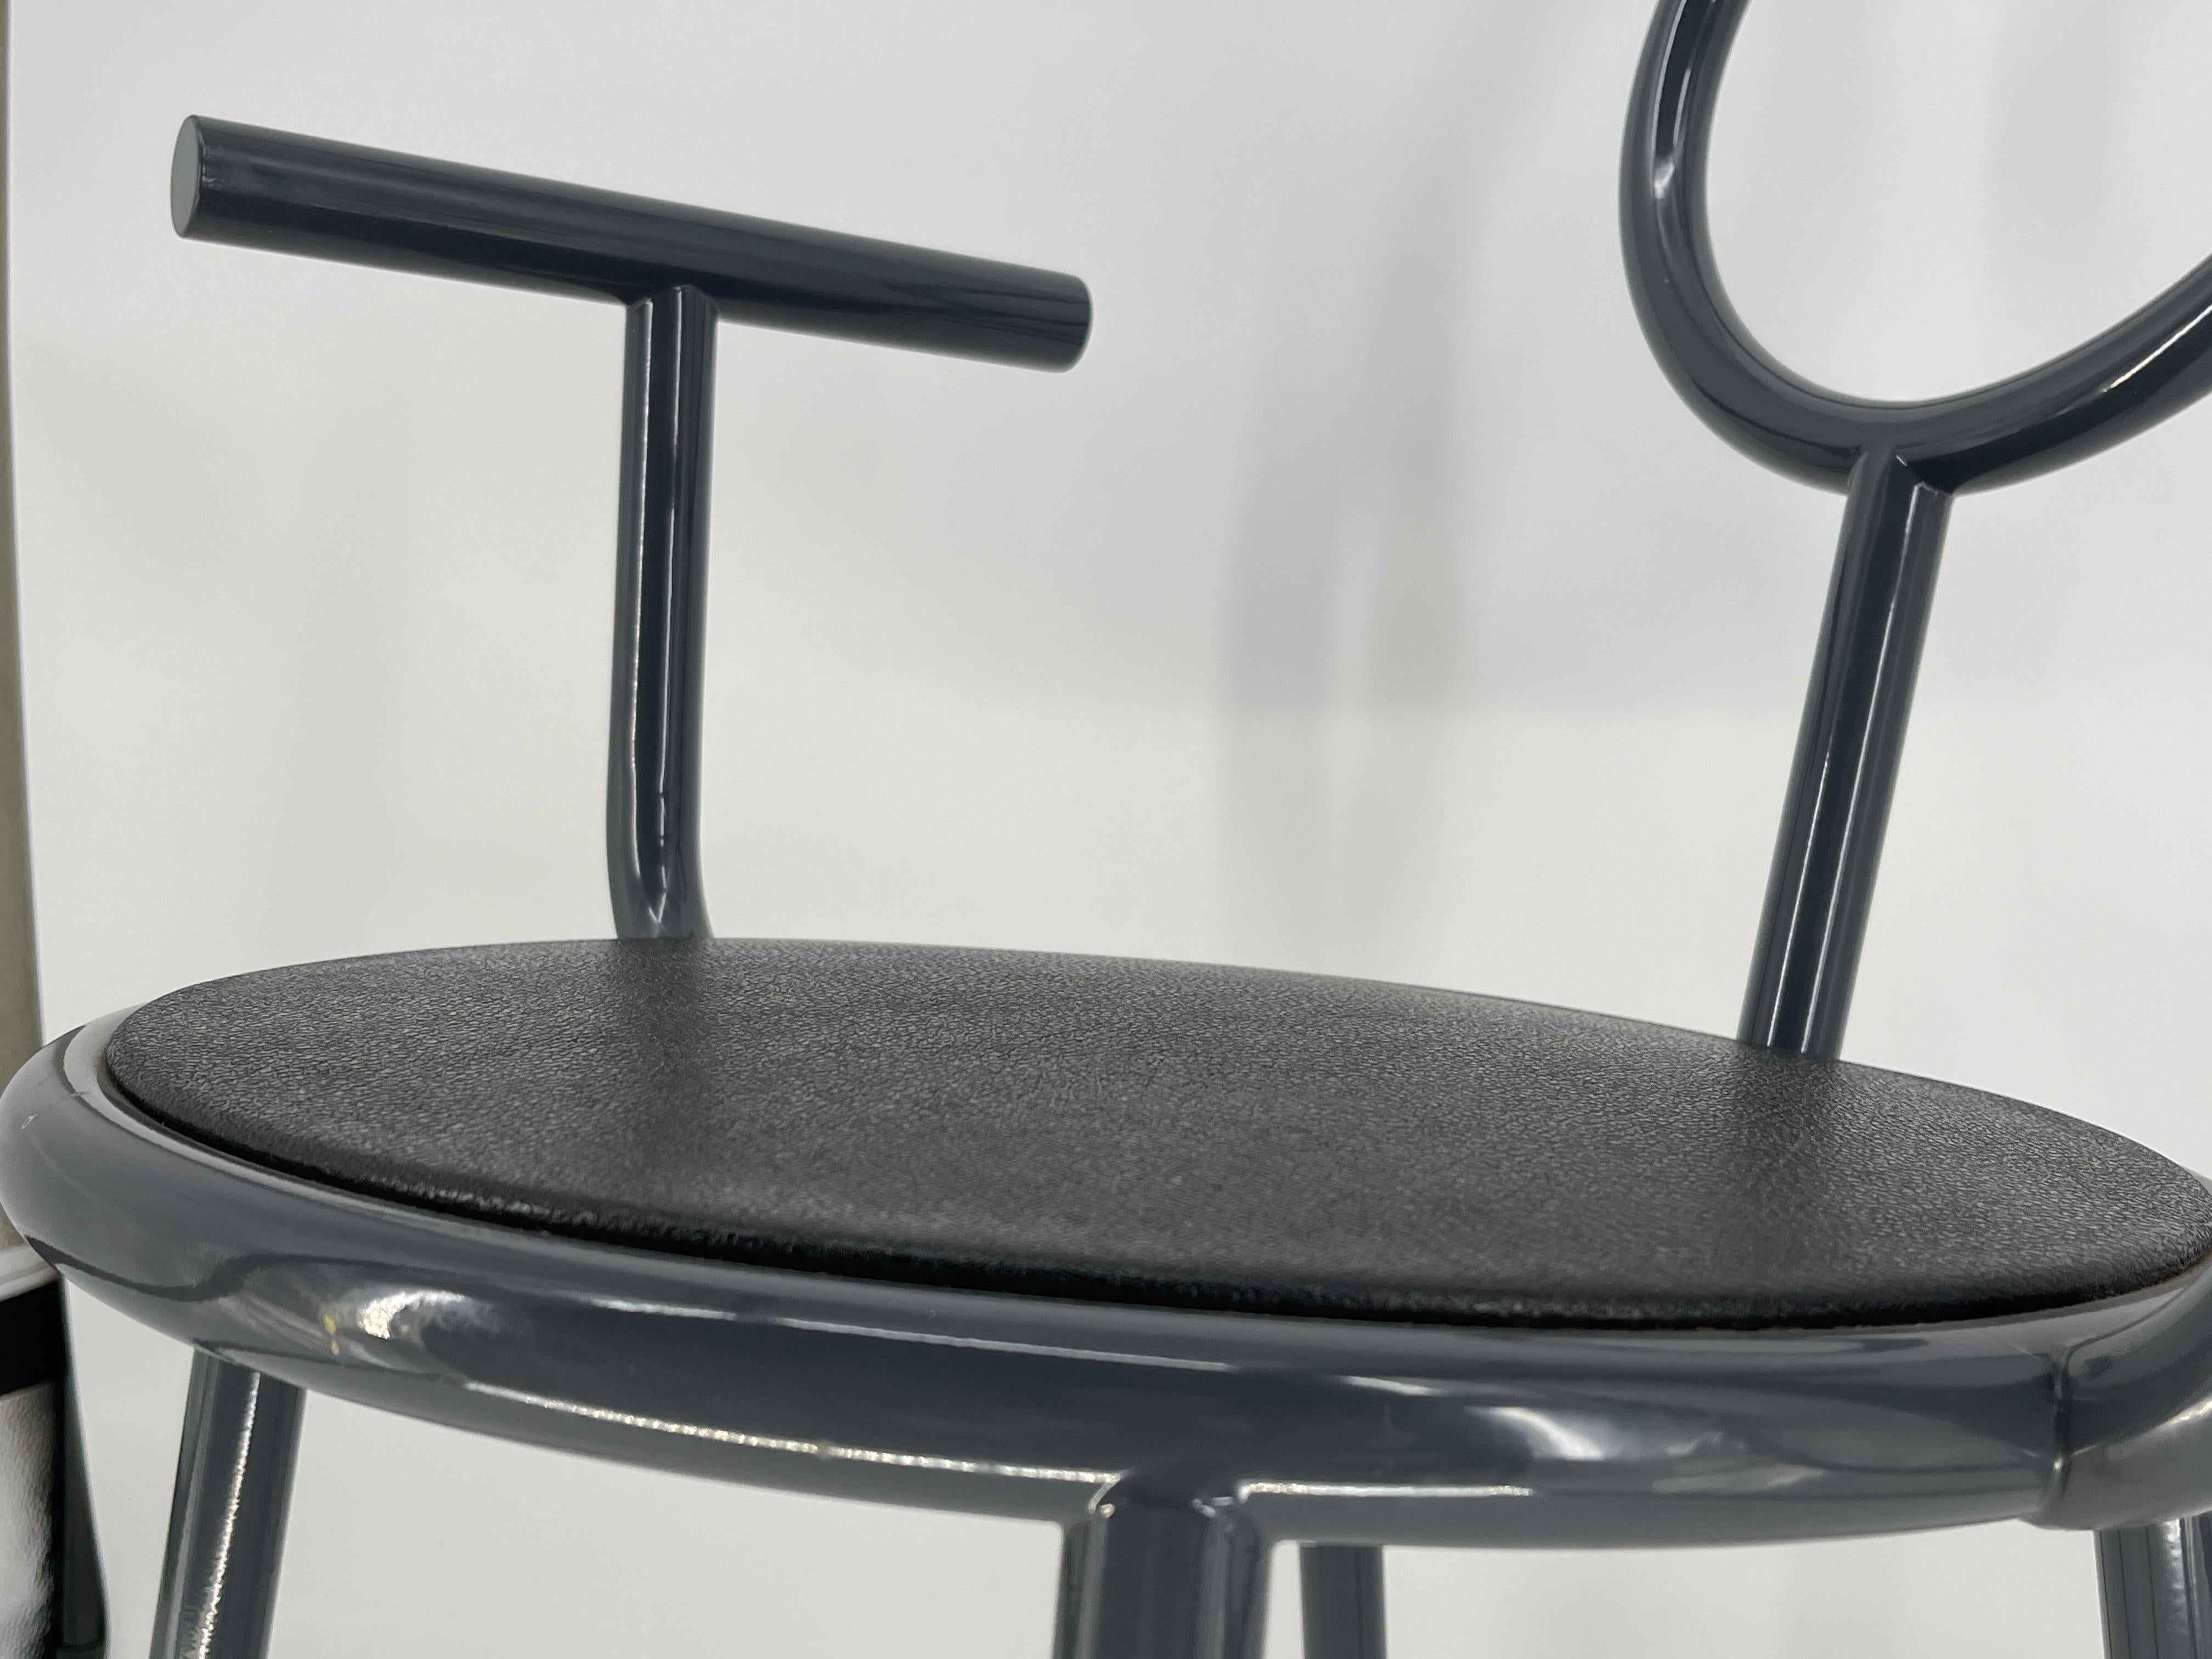 Sessel ' Stelline ' von Allessandro Mendini für den Hersteller Elam UNO, Design 1987. Struktur aus dunkelgrau lackiertem Metall mit Kunststoffeinlagen in der Sitzfläche. Branding unterhalb der Kunststoffeinlage Sitzfläche 